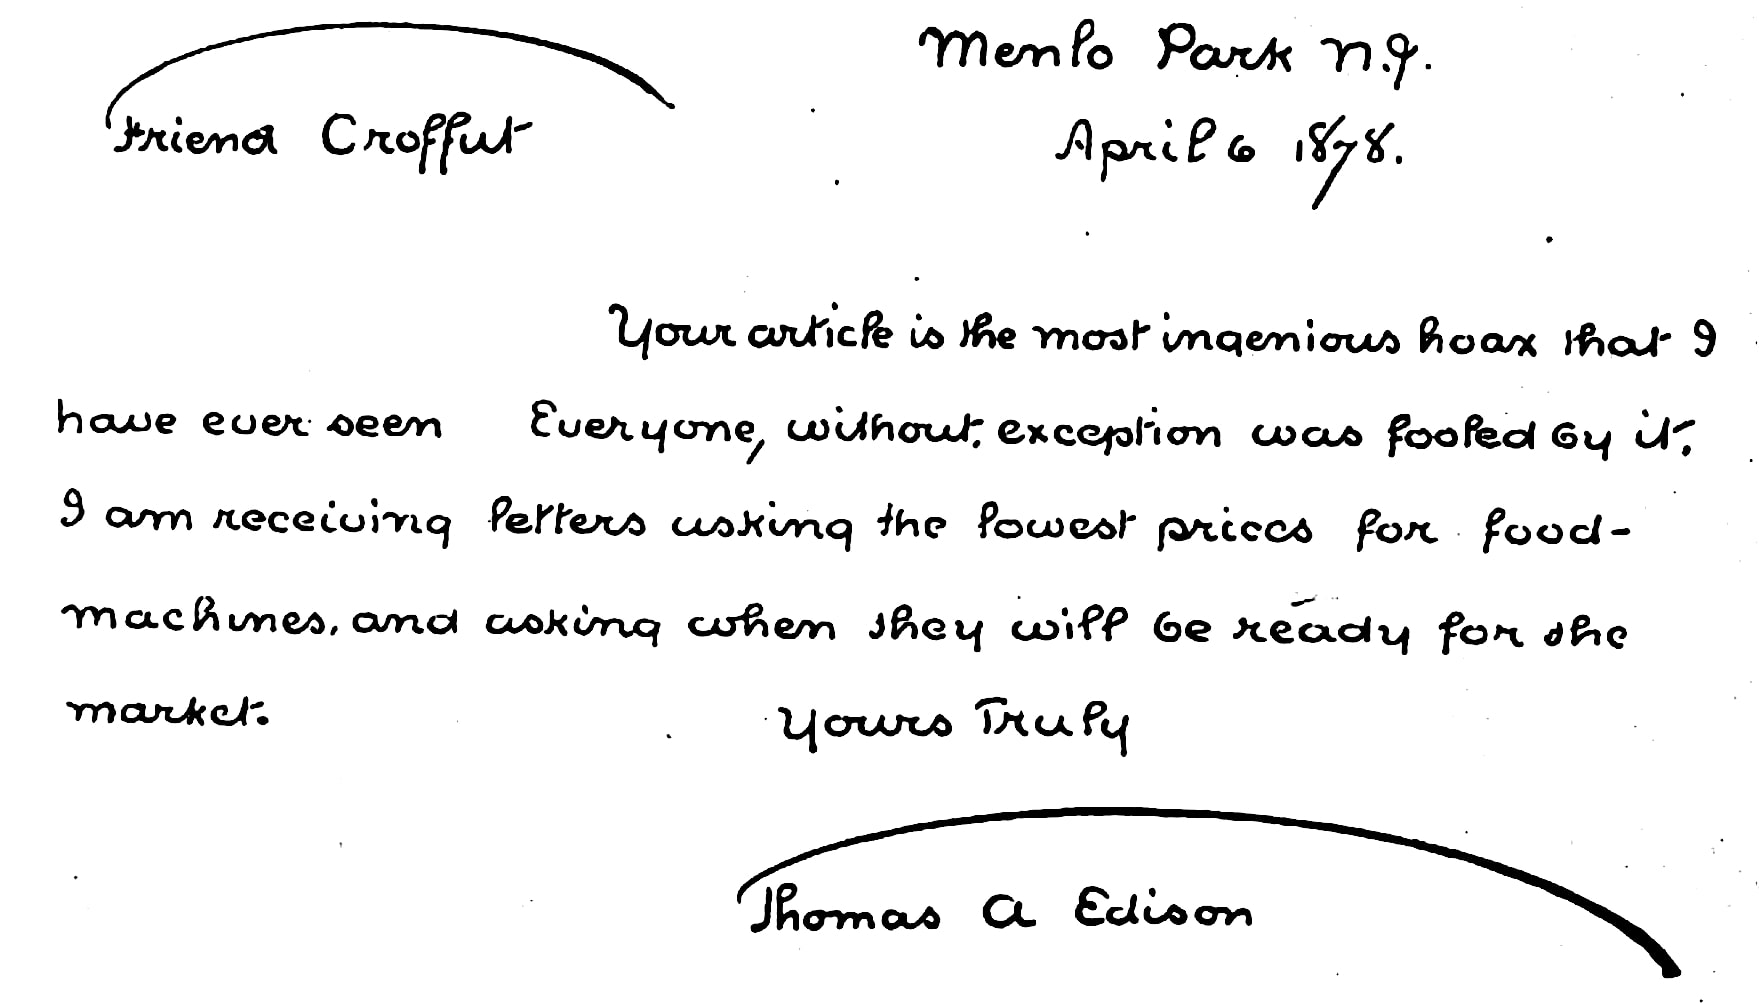 Thomas Edison's Letter